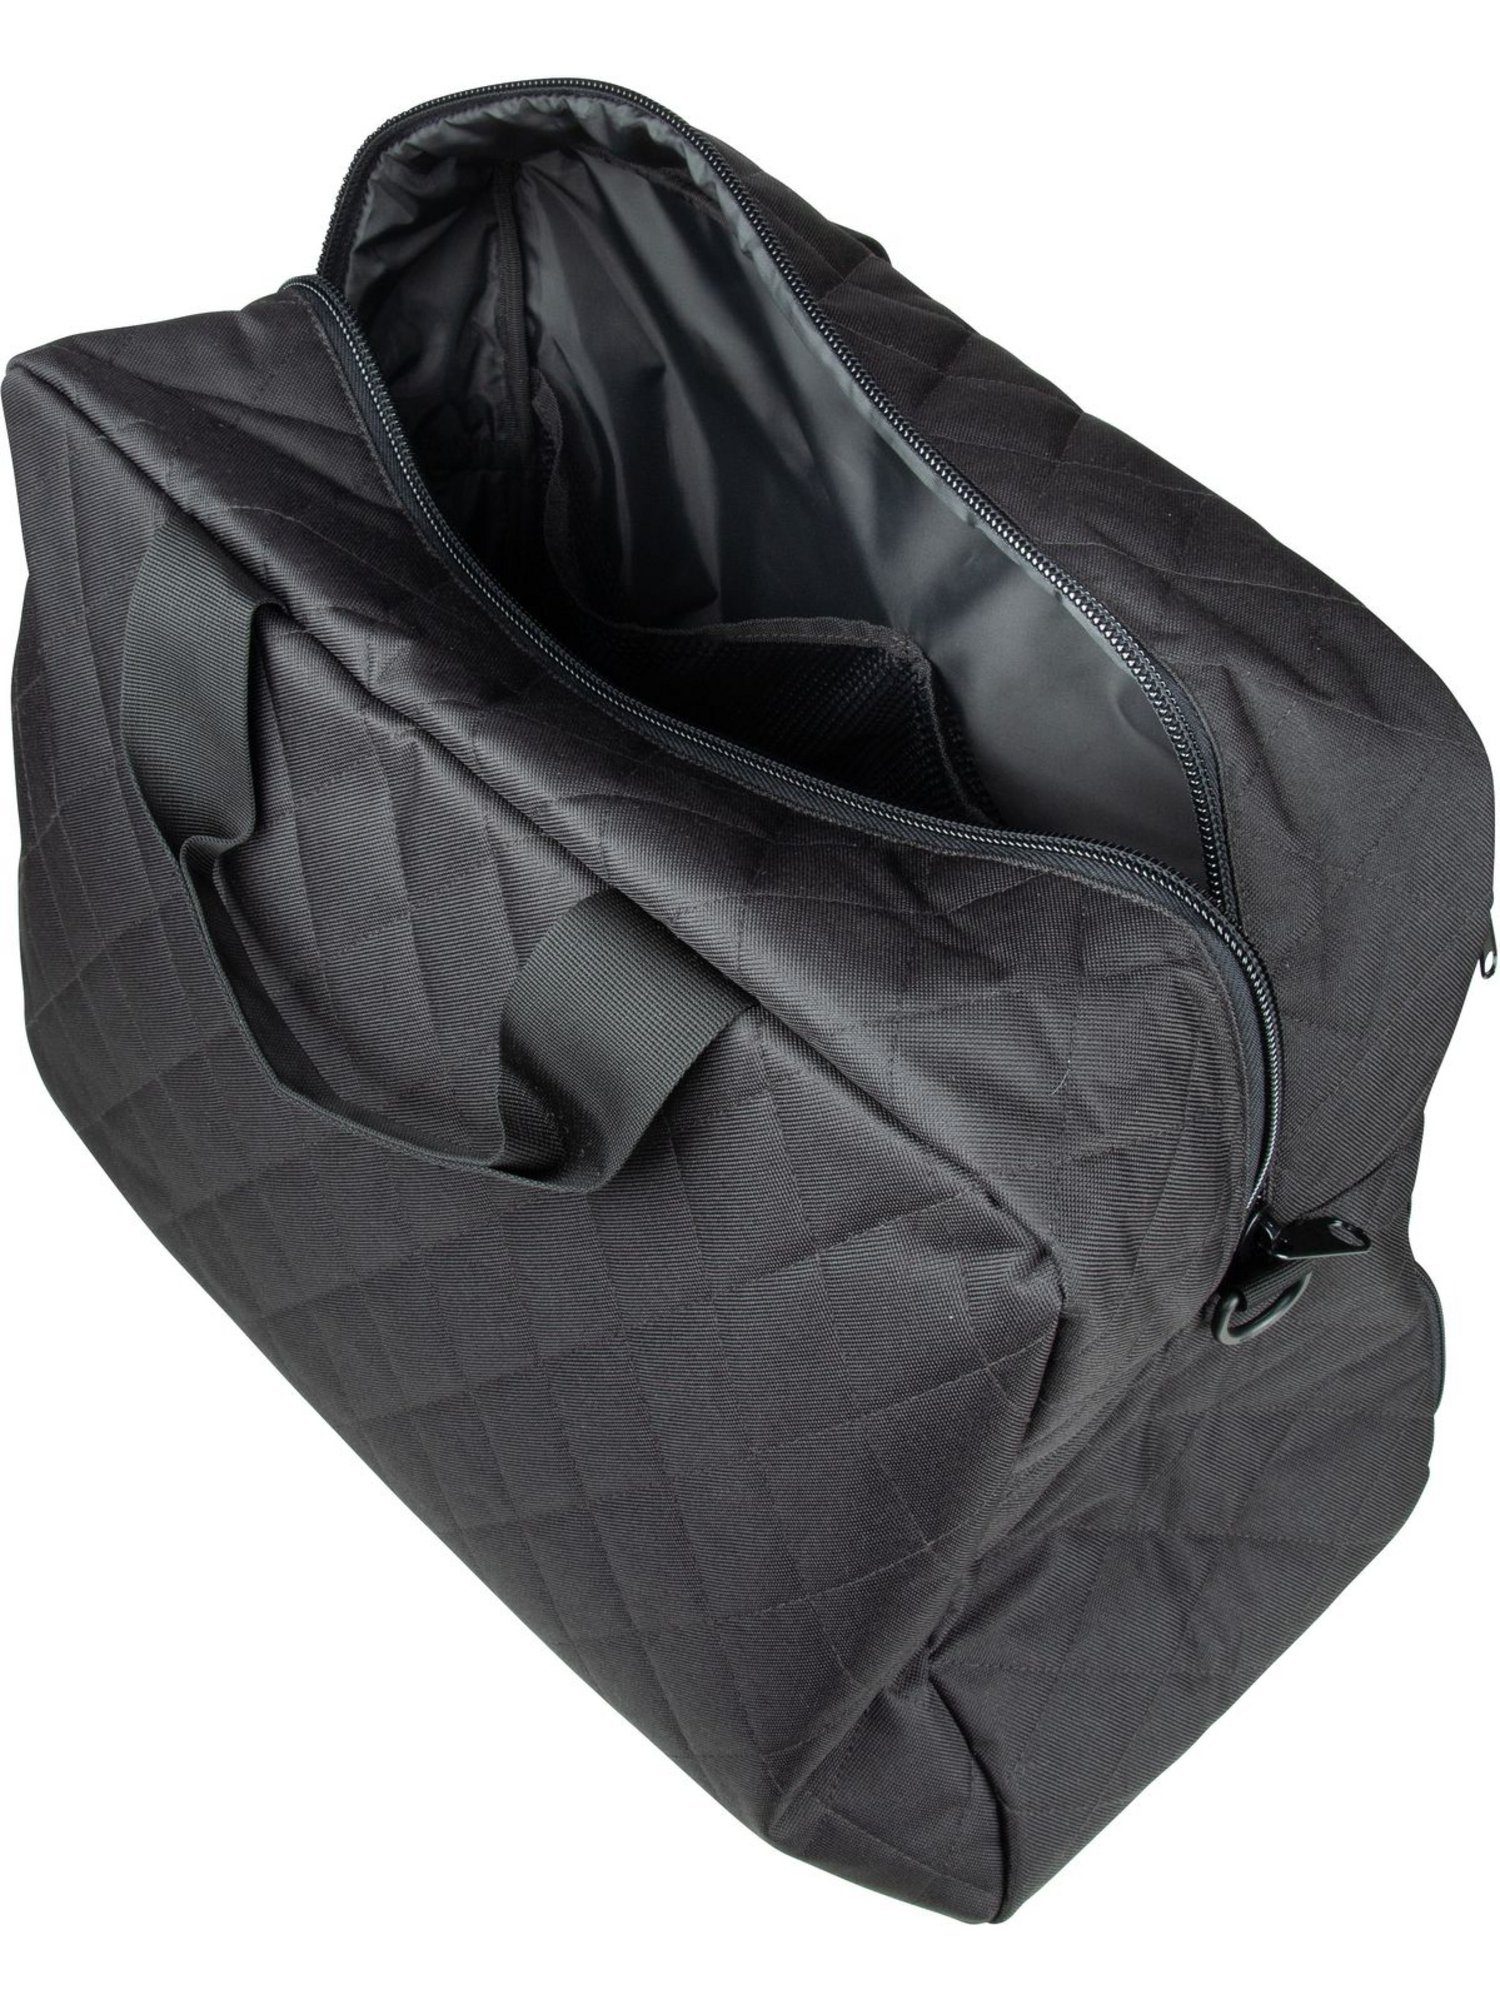 Black duffelbag Rhombus REISENTHEL® Weekender M